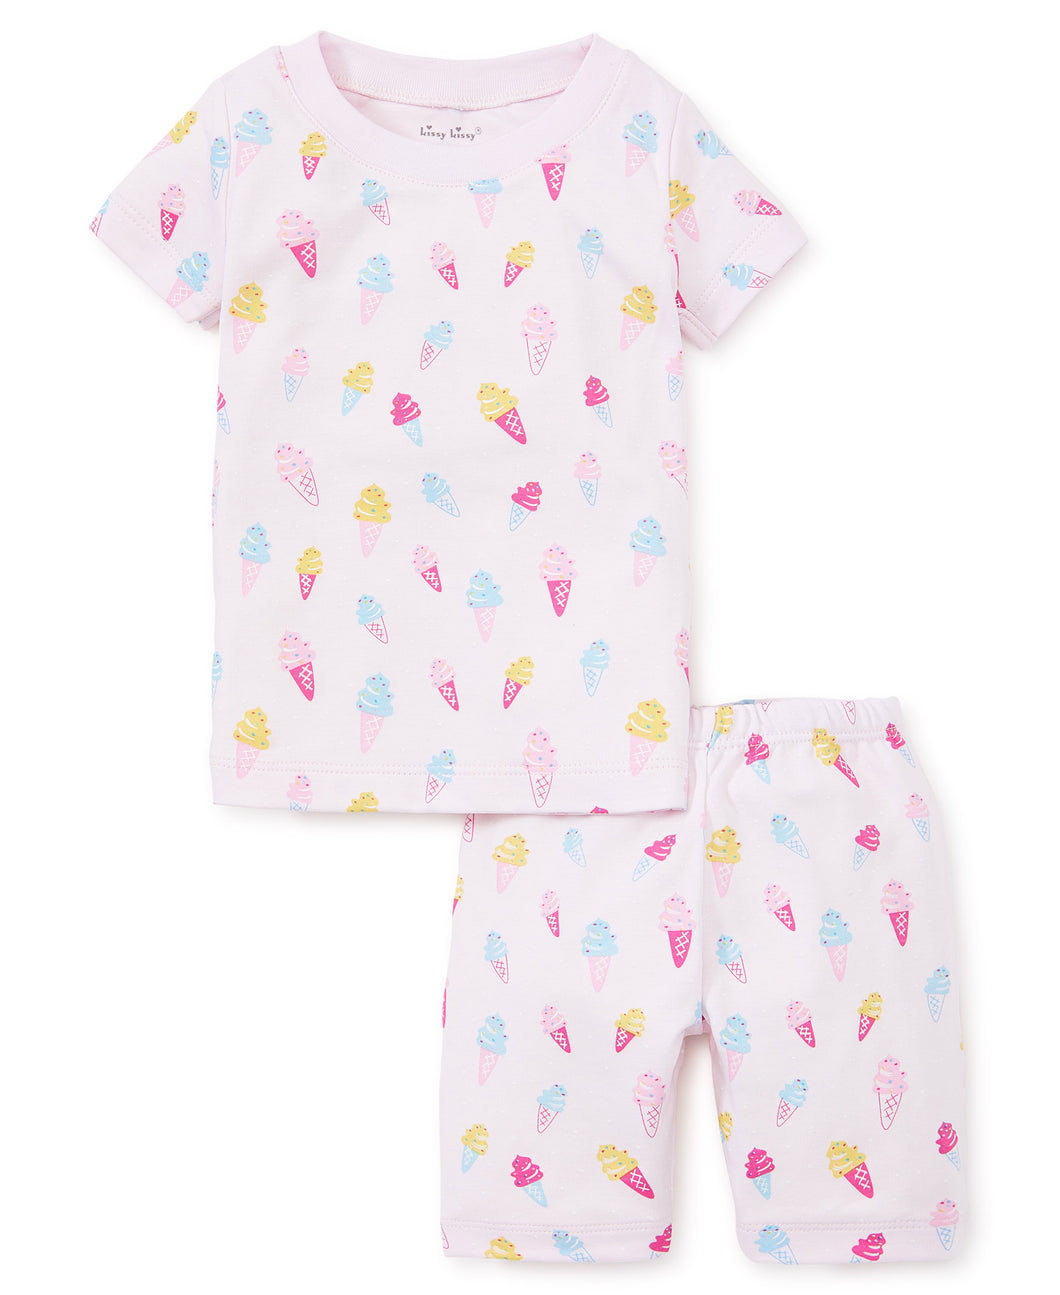 Pj's Sprinkles Short Pajama Set